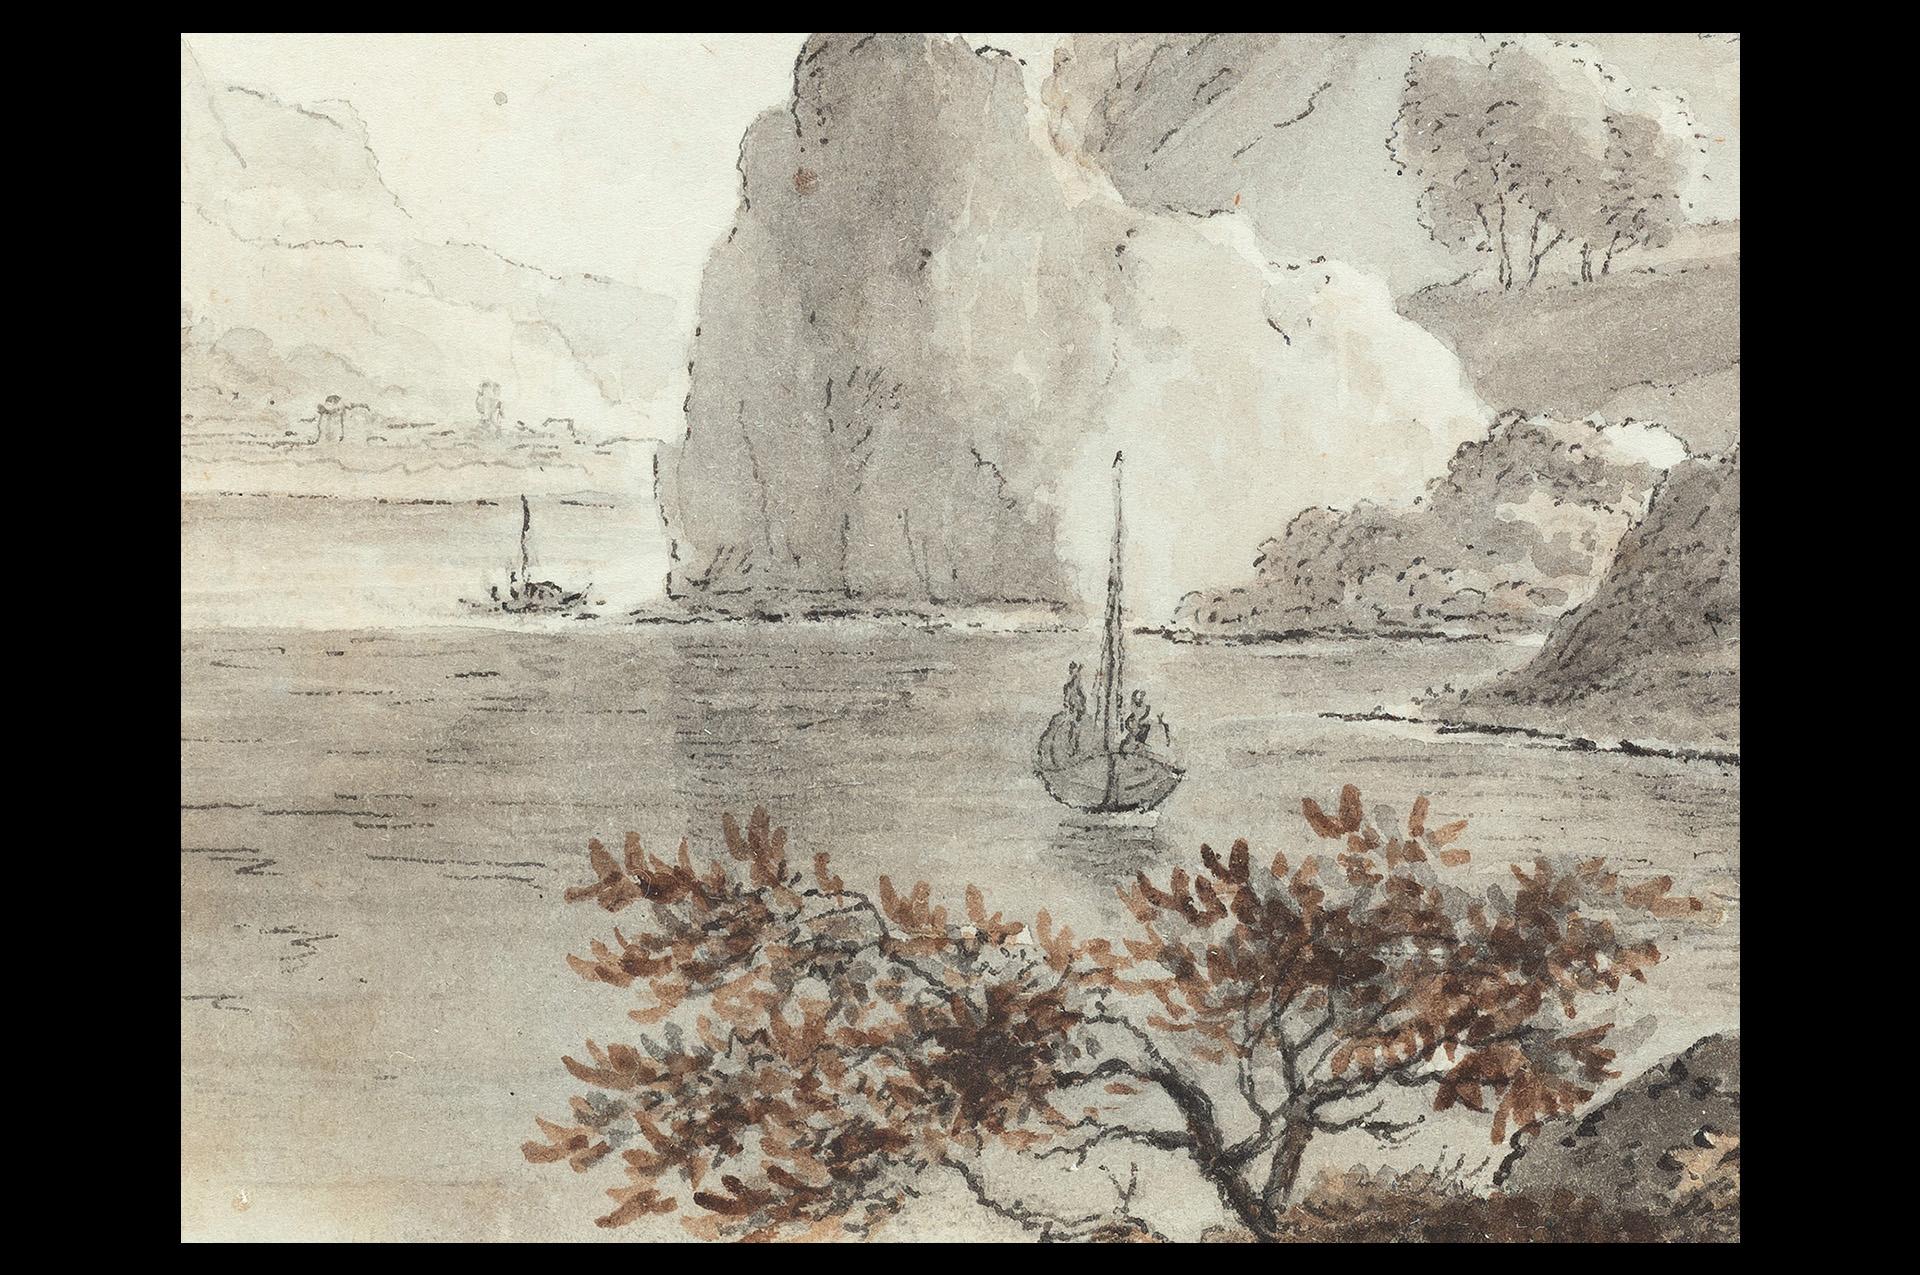 Südstaatliche Landschaft, Schiffe, Zeichnung eines alten Meisters, 19. Jahrhundert, von Von Stengel (Romantik), Art, von Stephan Christian von Stengel